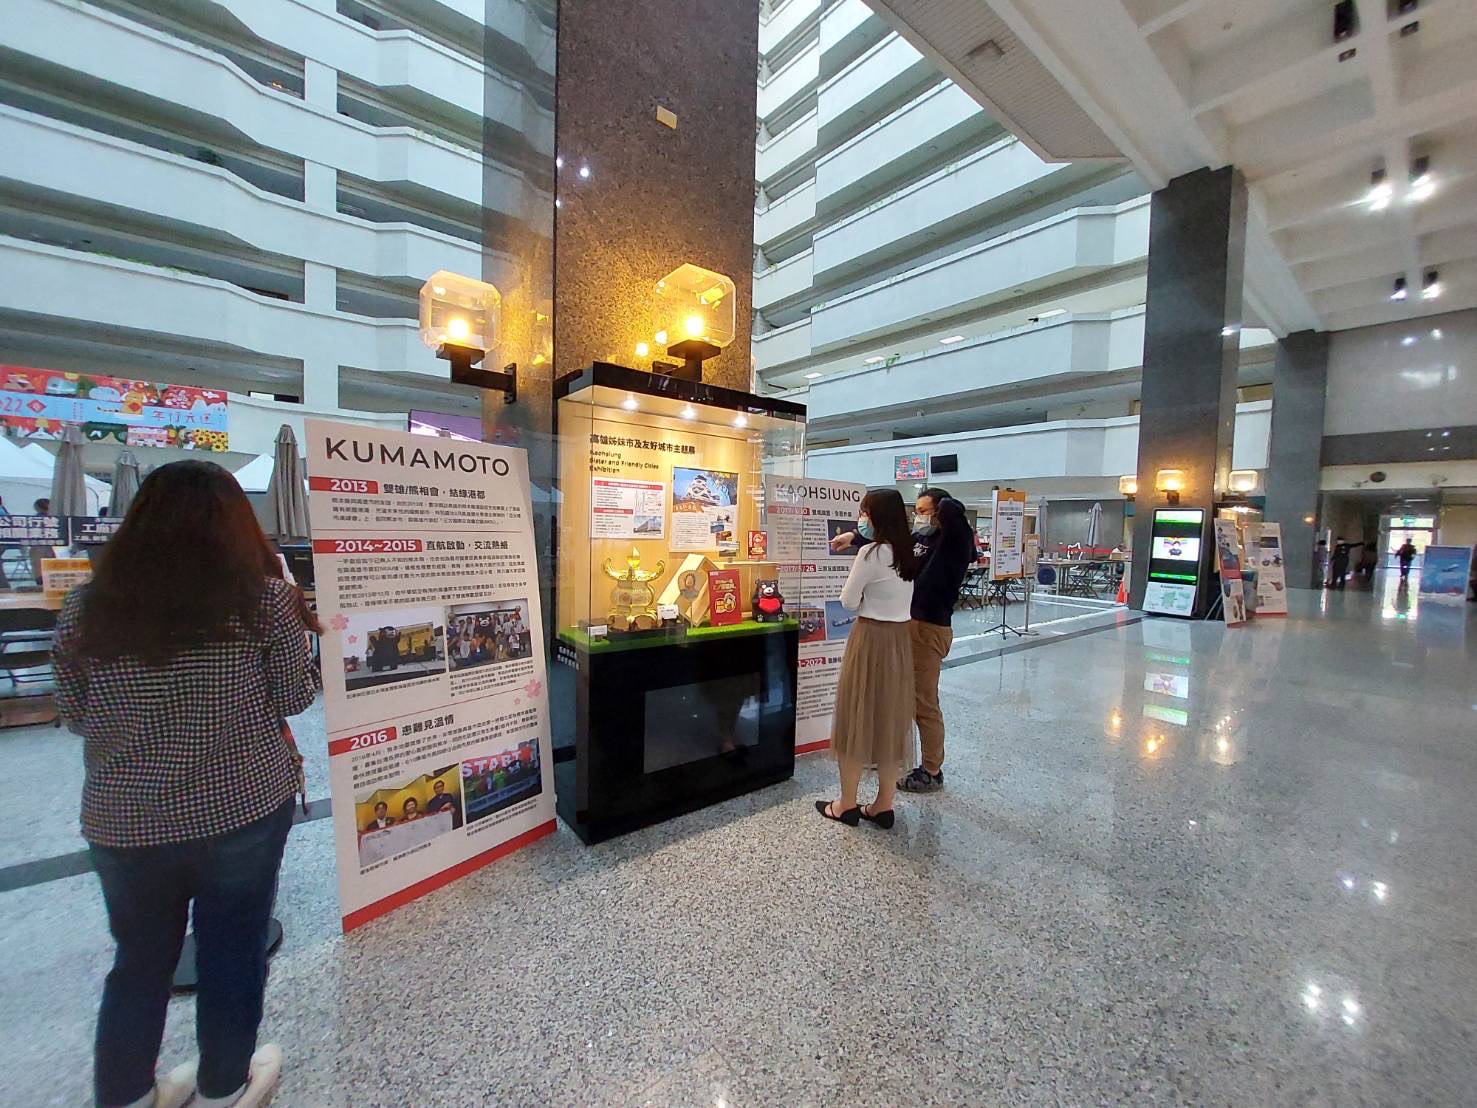 四維行政中心中庭舉辦「高雄姊妹市及友好城市主題展─熊本縣」，歡迎市民朋友到場觀賞。